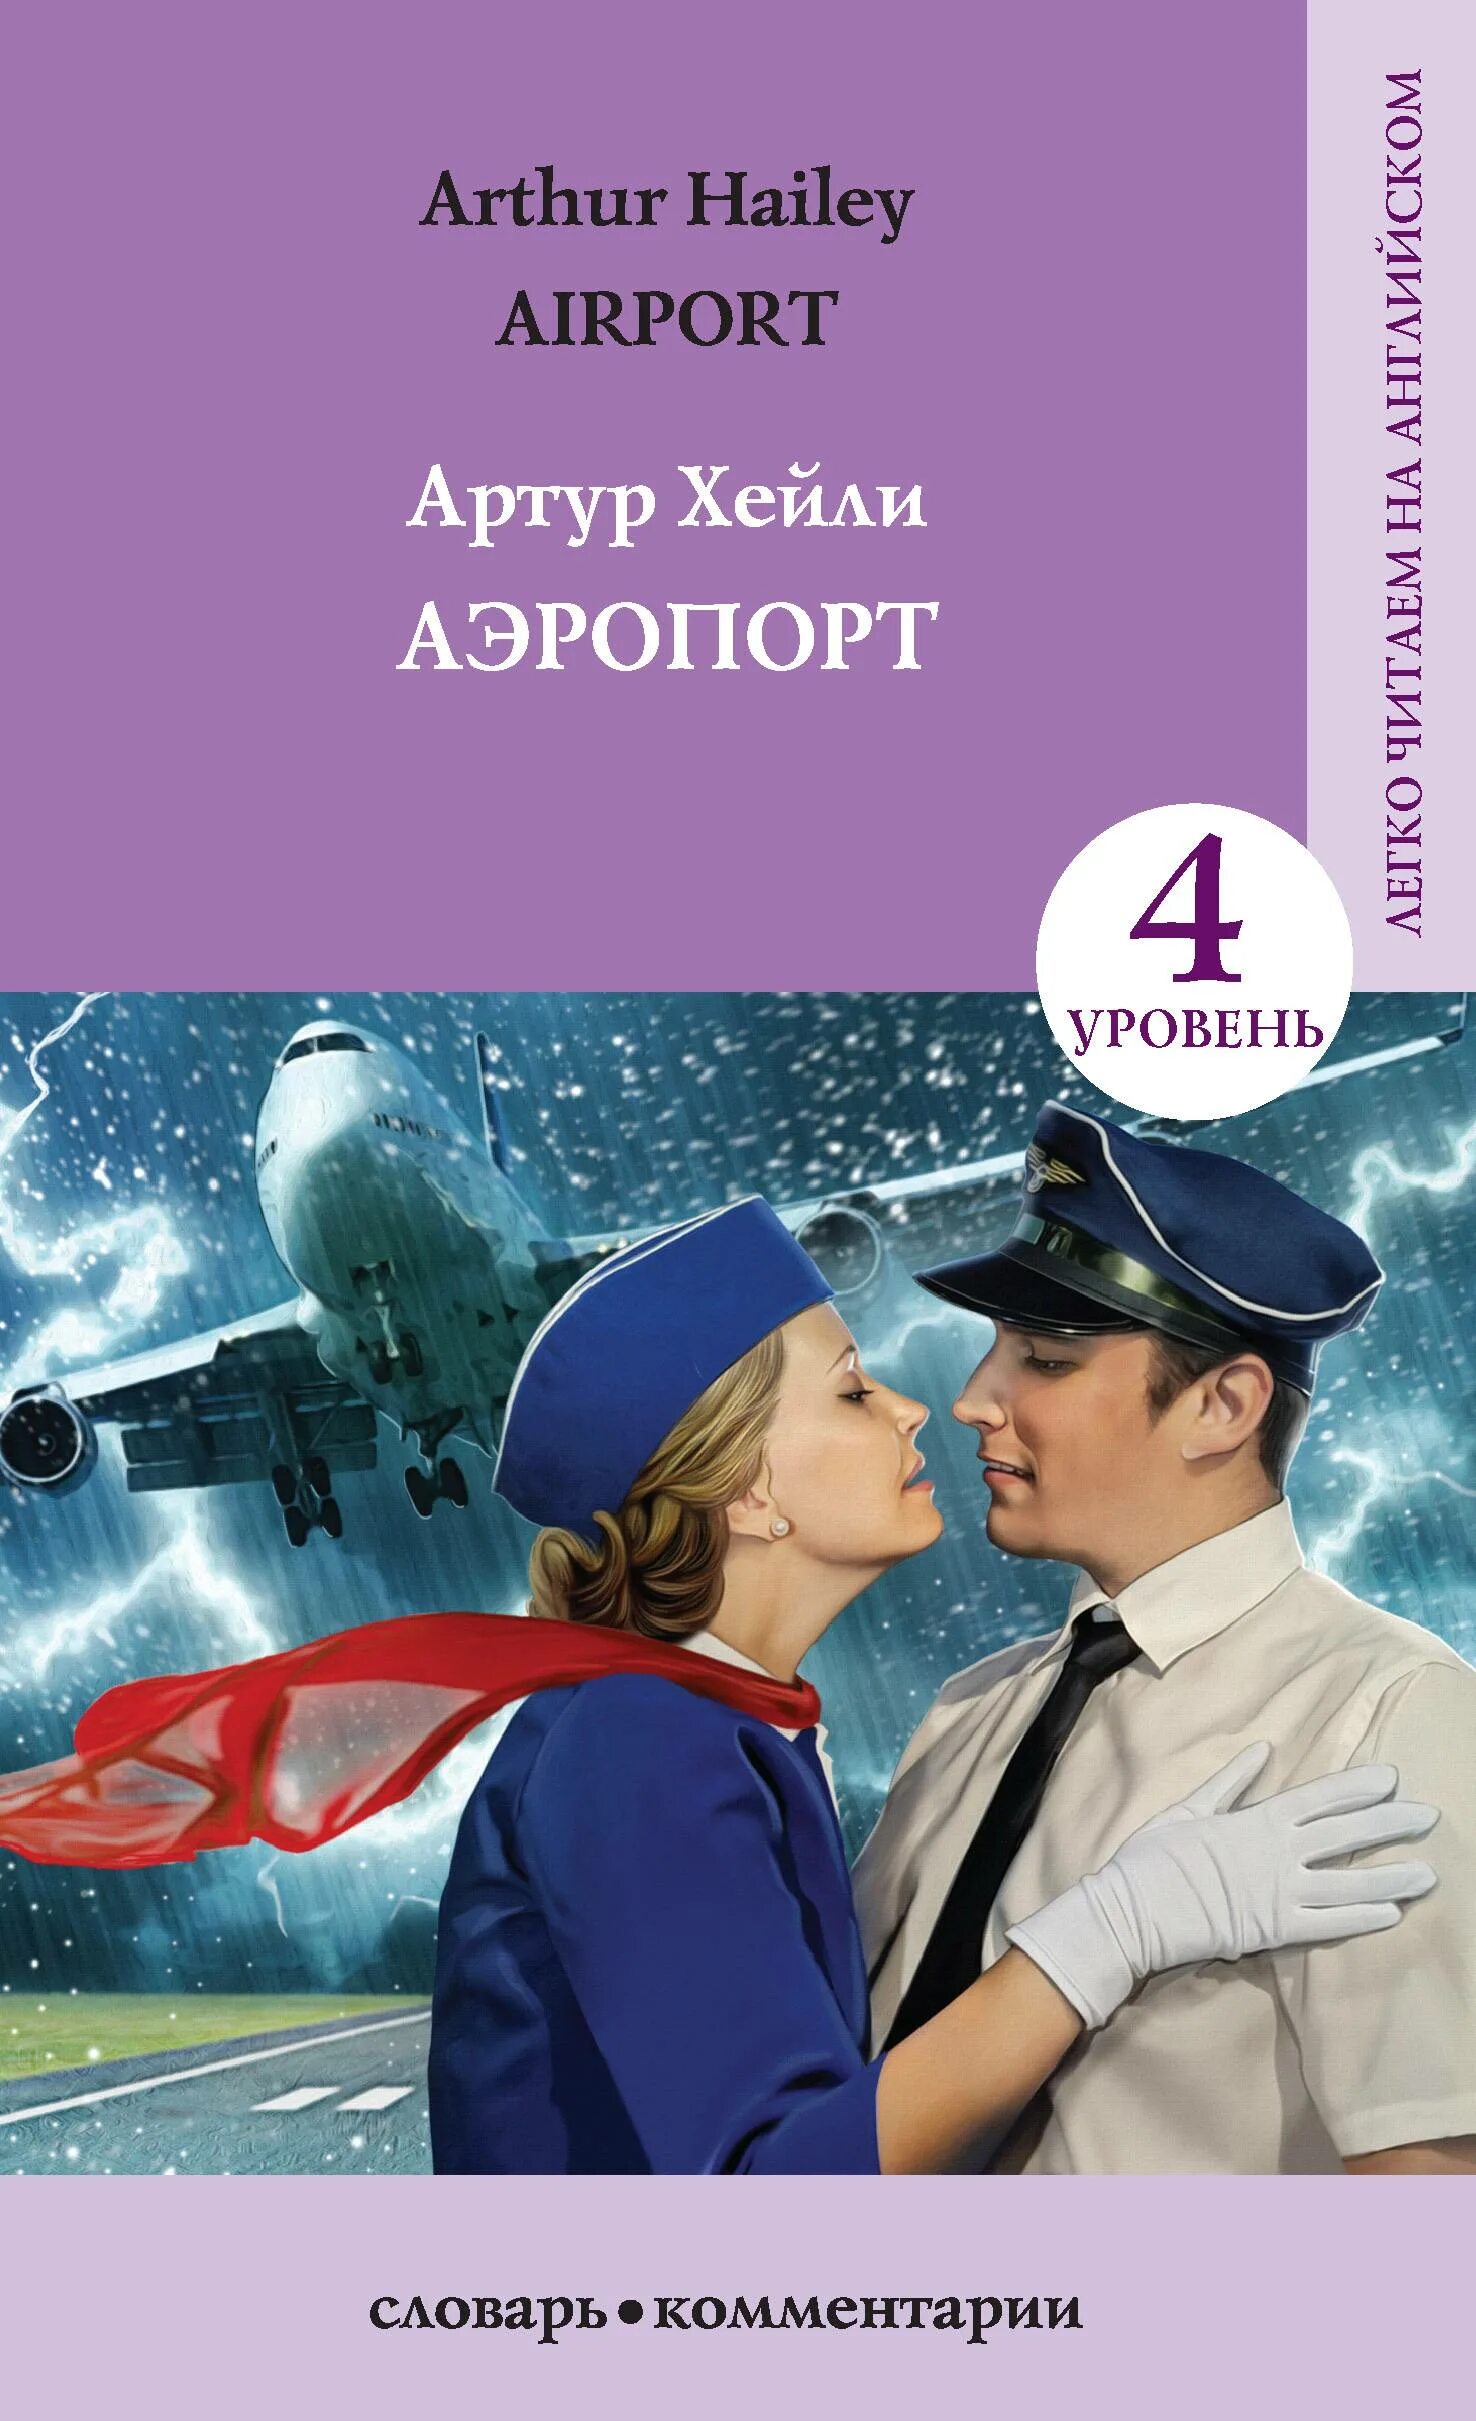 Книга аэропорт отзывы. Airport (аэропорт) Arthur Hailey.